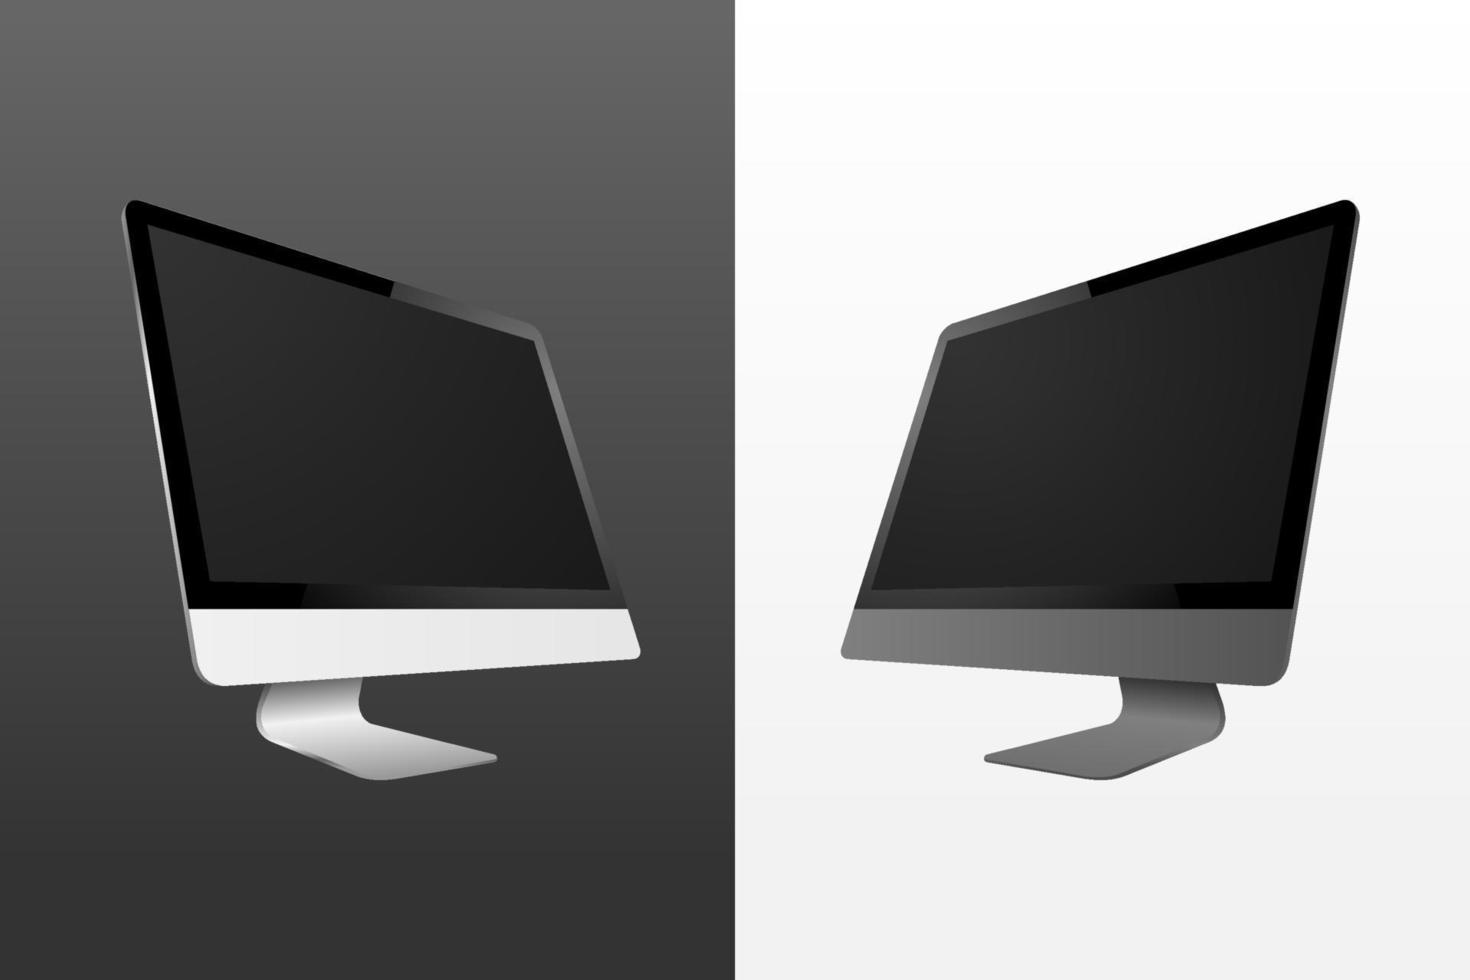 imagen vectorial realista del monitor de la computadora con vista lateral de la opción de color blanco y gris espacial vector